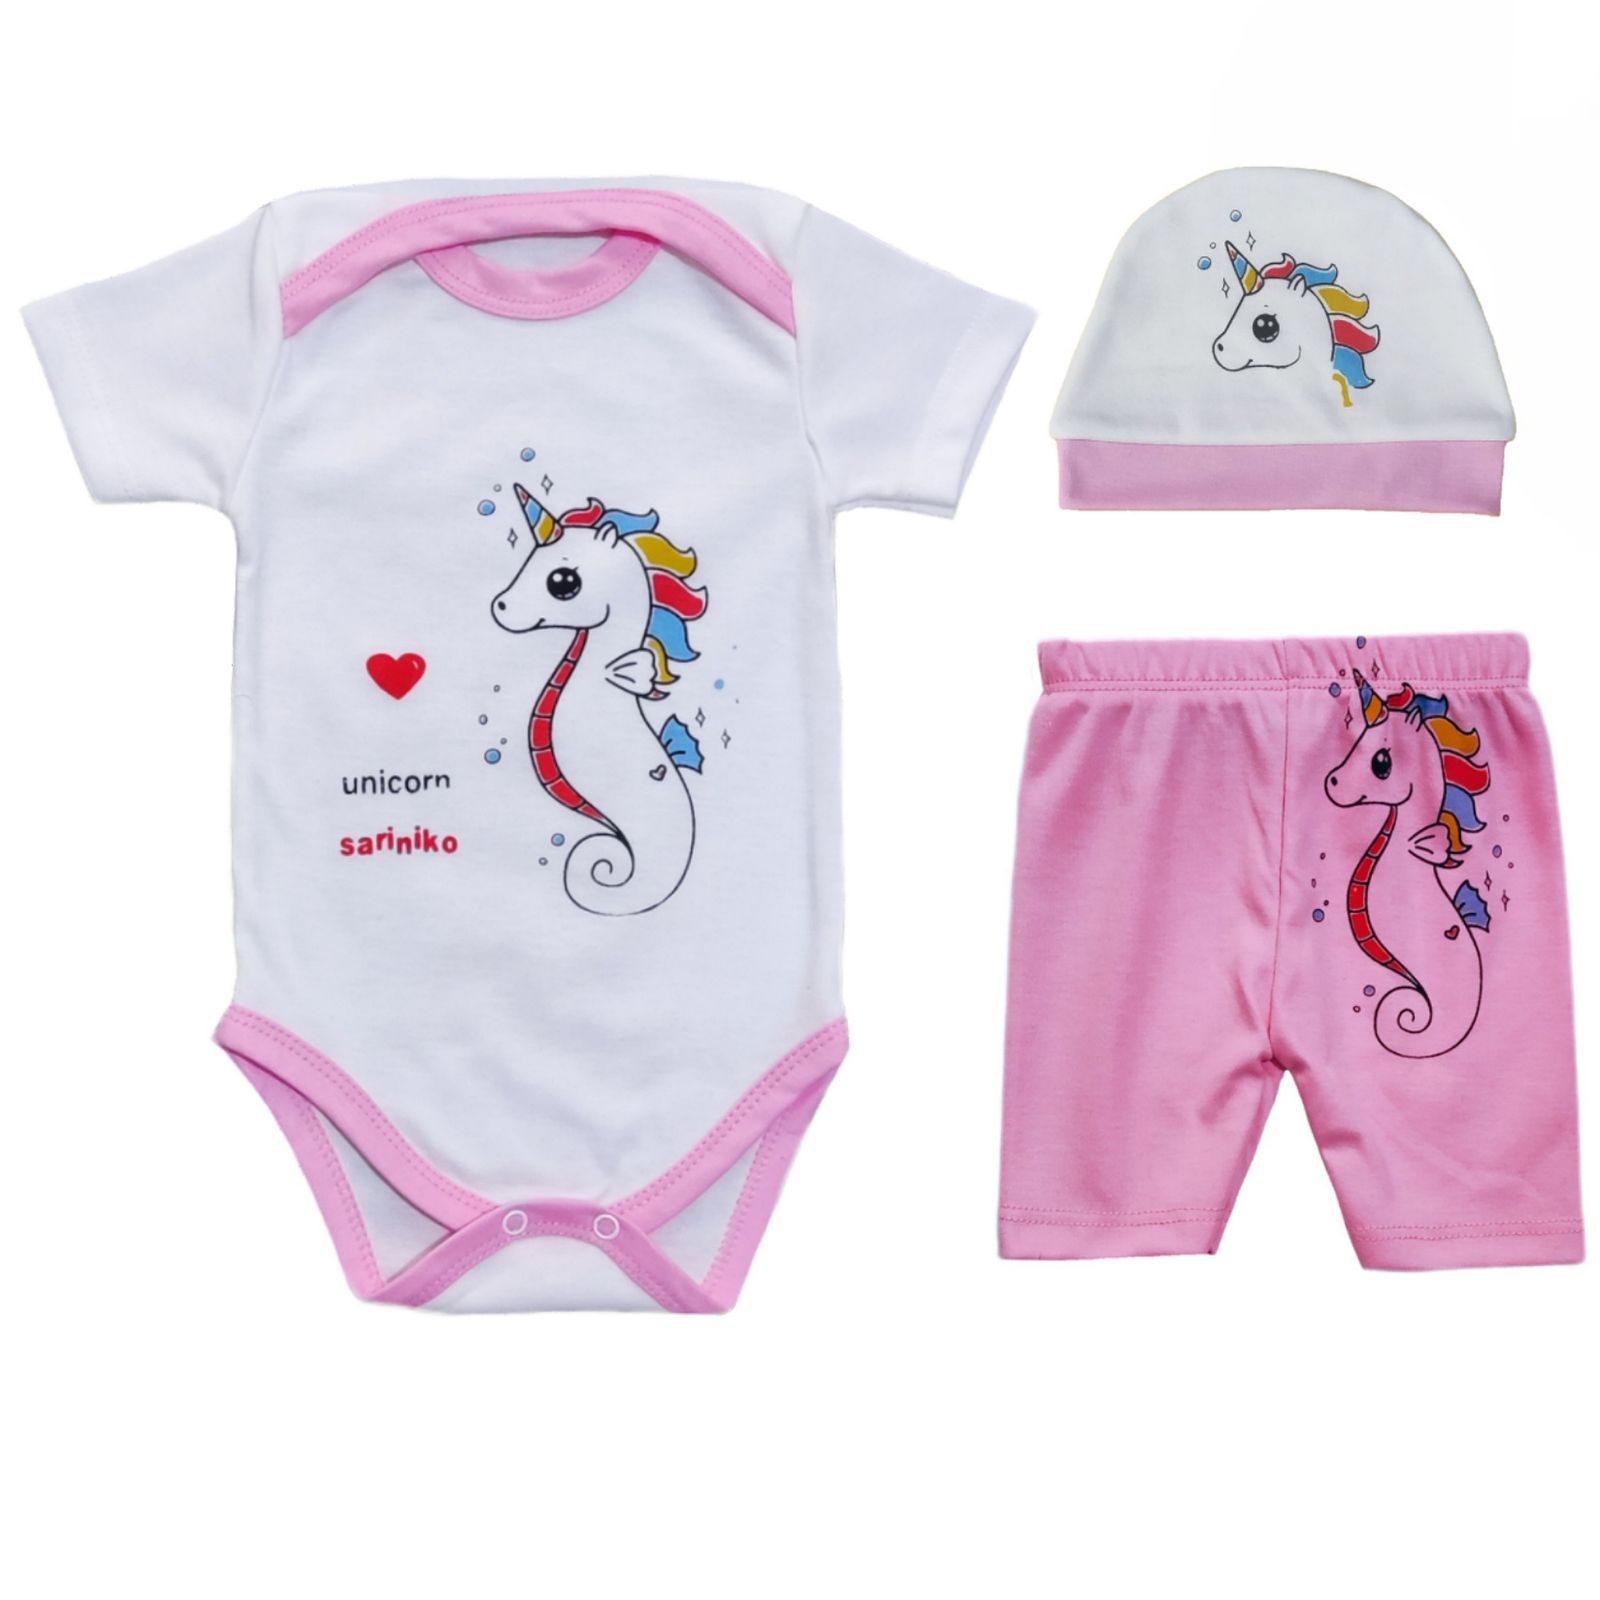 ست 3 تکه لباس نوزادی سرینیکو مدل Unicorn کد B03 -  - 1